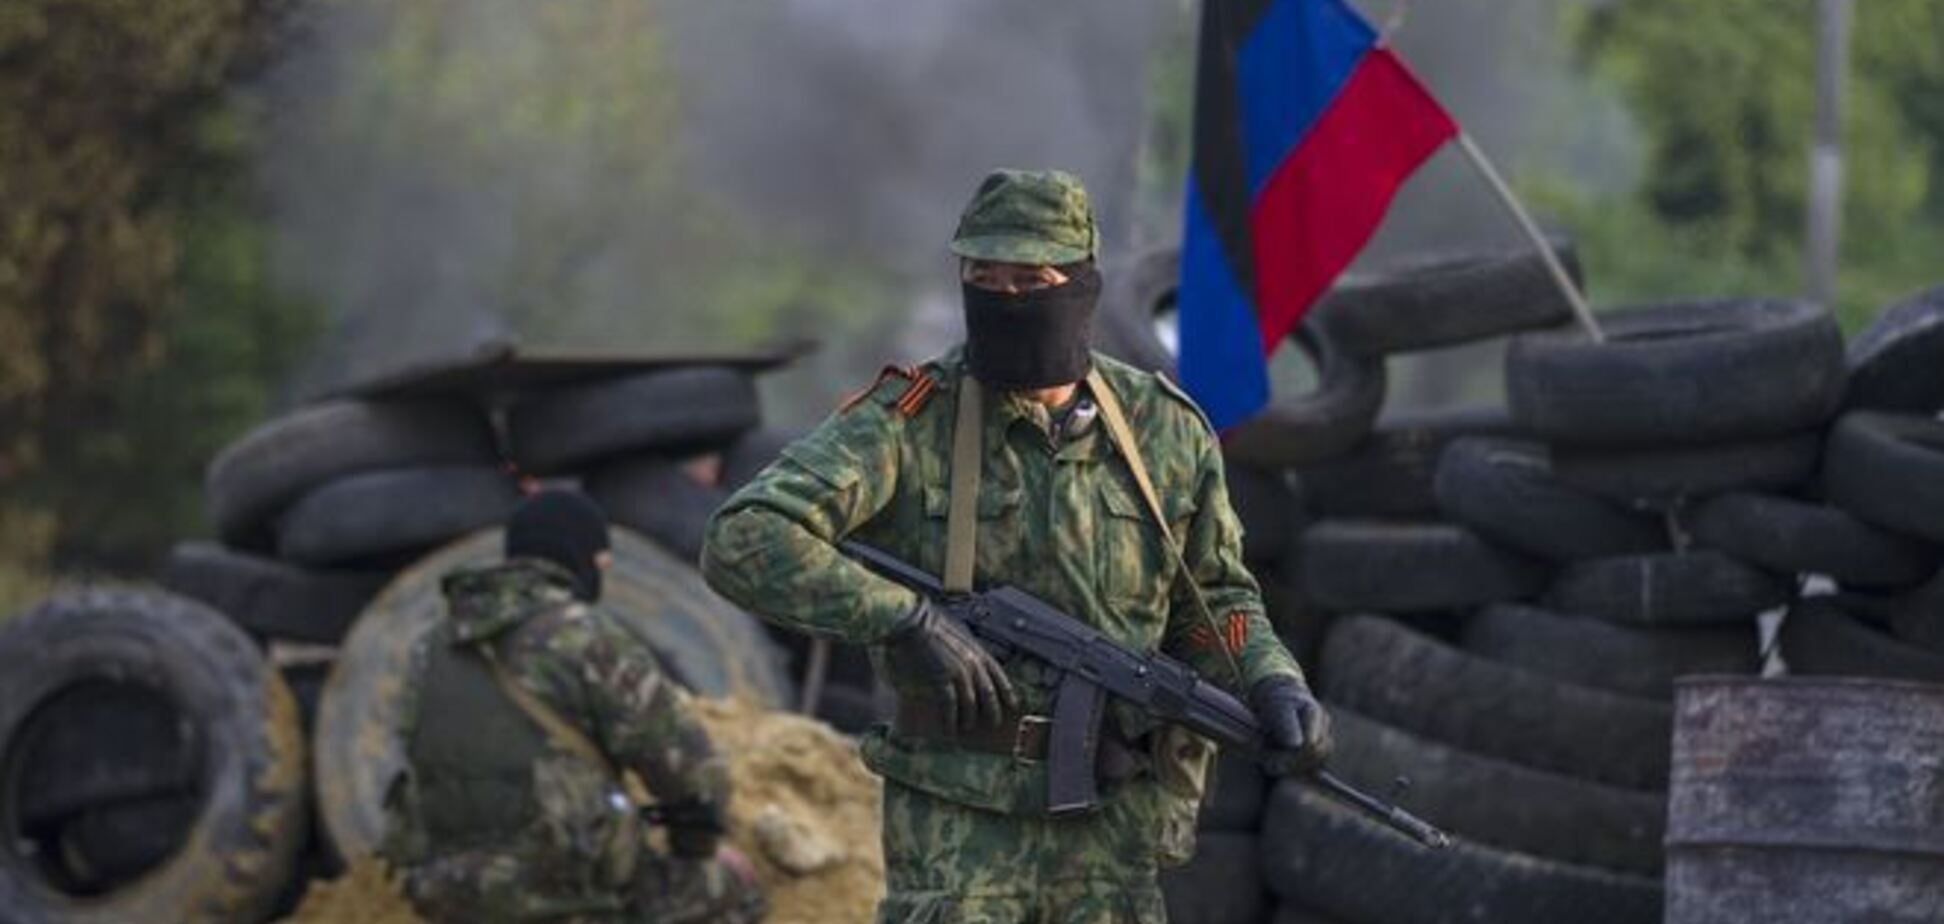 Террористы в Донецке платят милиционерам десятки тысяч долларов за предательство - источник